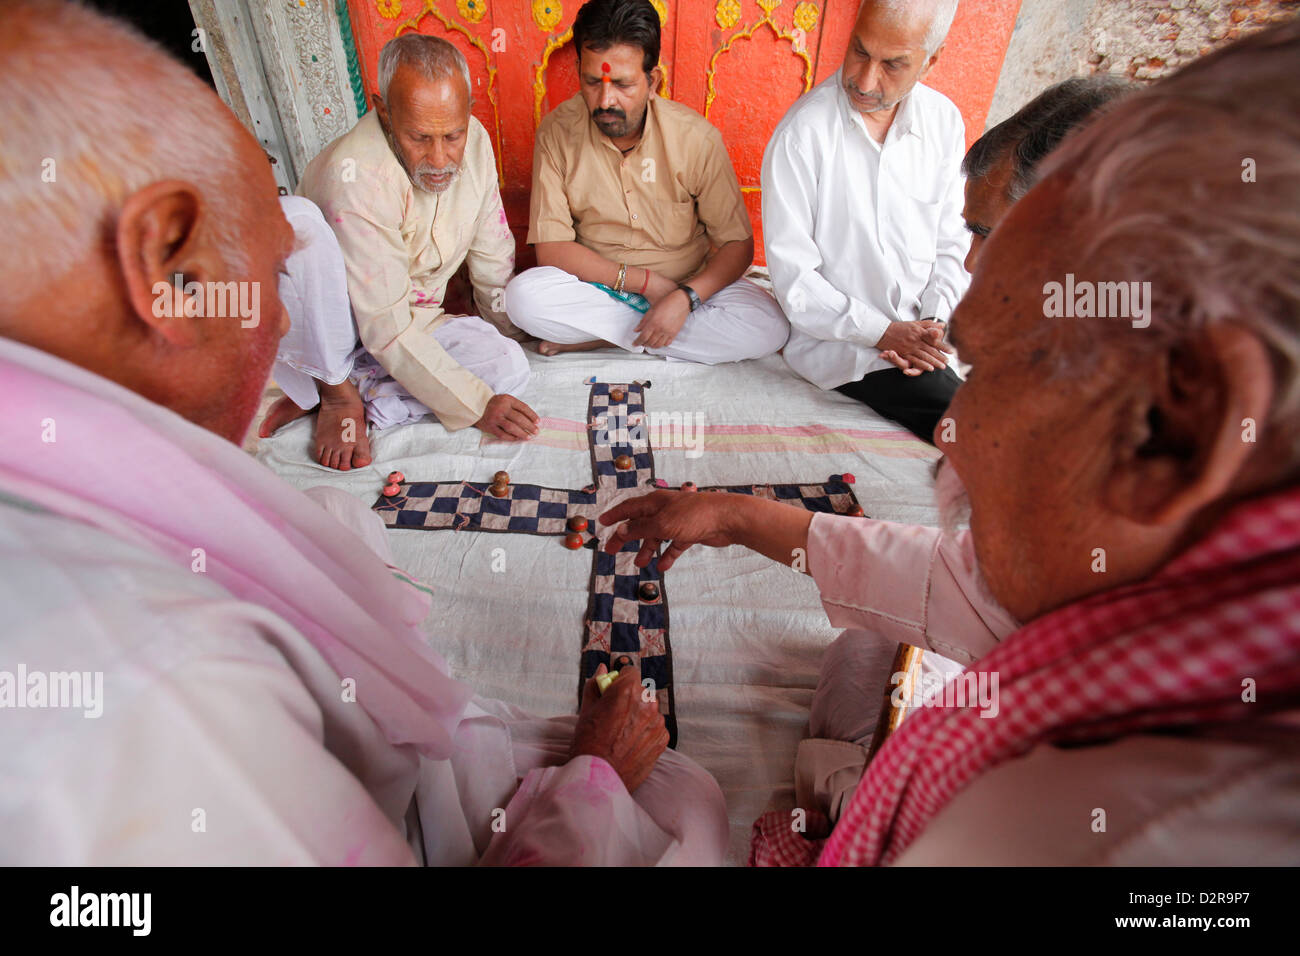 Senior men playing a game, Mathura, Uttar Pradesh, India, Asia Stock Photo